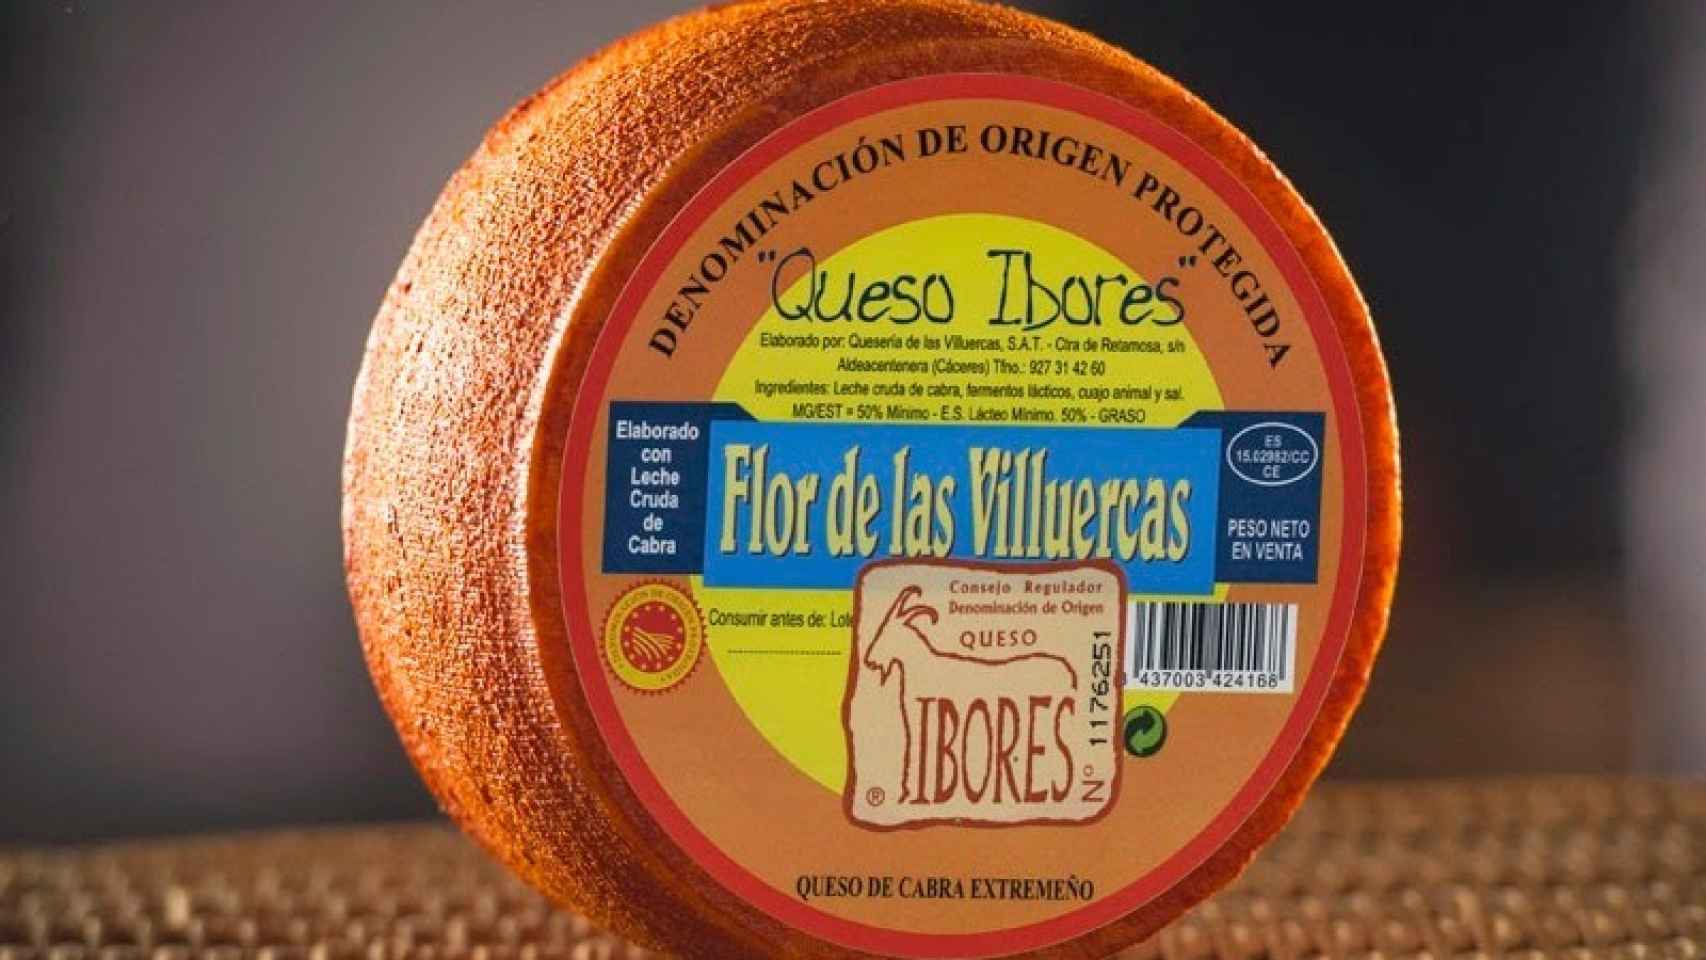 El queso Flor de las Villuercas, con D.O. Ibores.